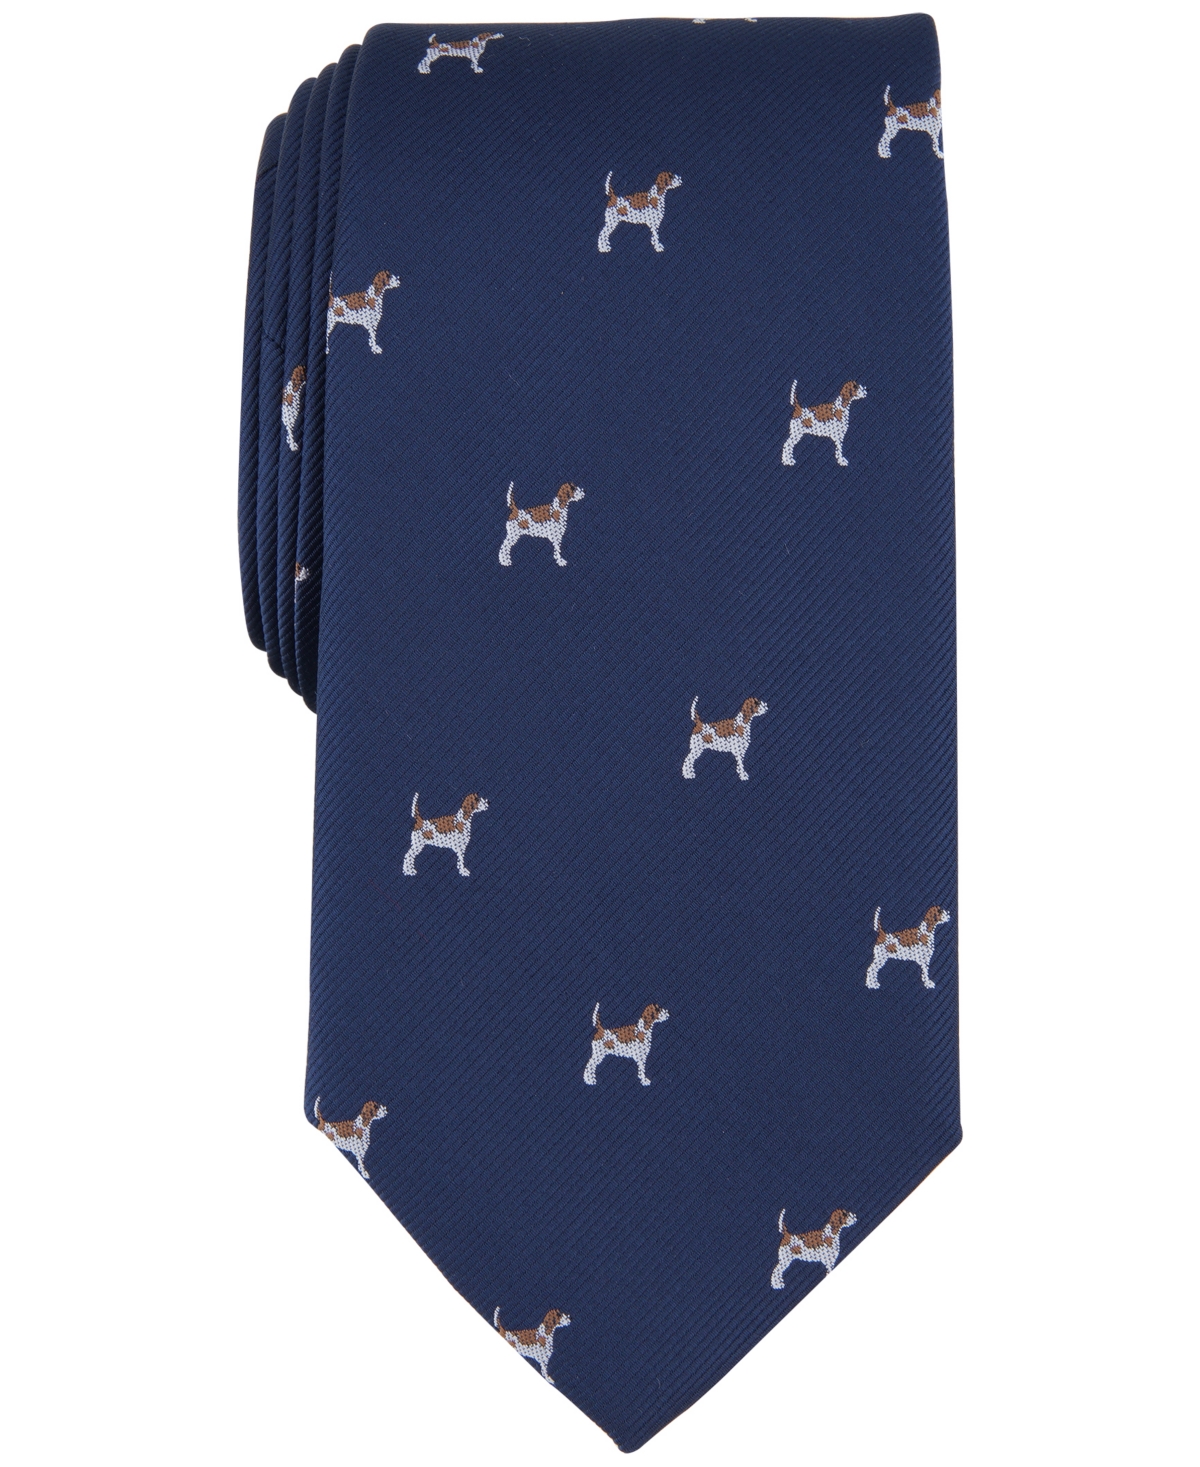 Men's Clarke Dog Tie, Created for Macy's - Navy